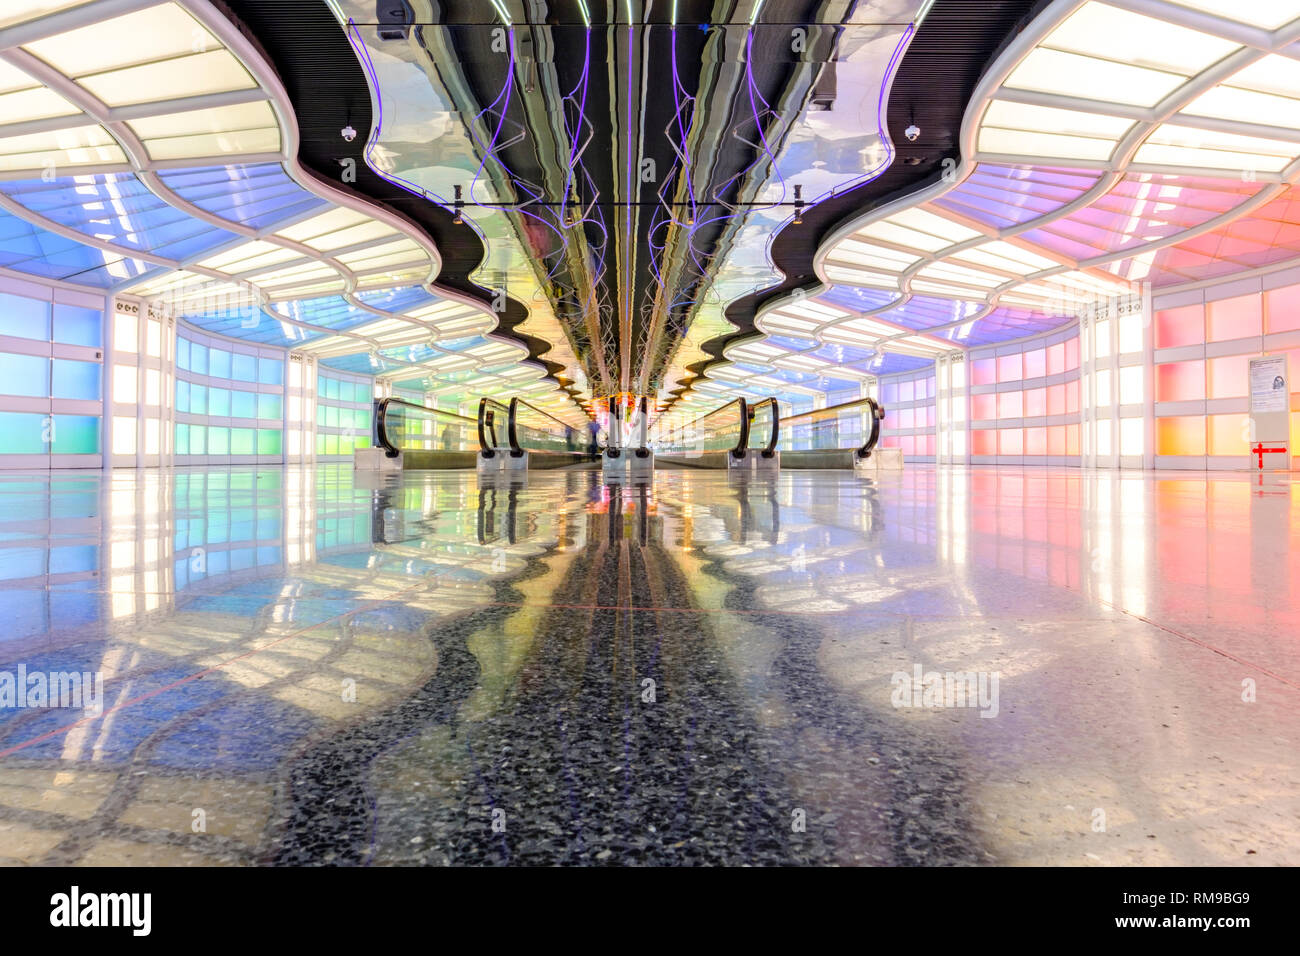 Passerelles mobiles, passage du tunnel Helmut Jahn du terminal United Airlines, terminal de l'aéroport international de Chicago O'Hare, Chicago, Illinois, États-Unis Banque D'Images